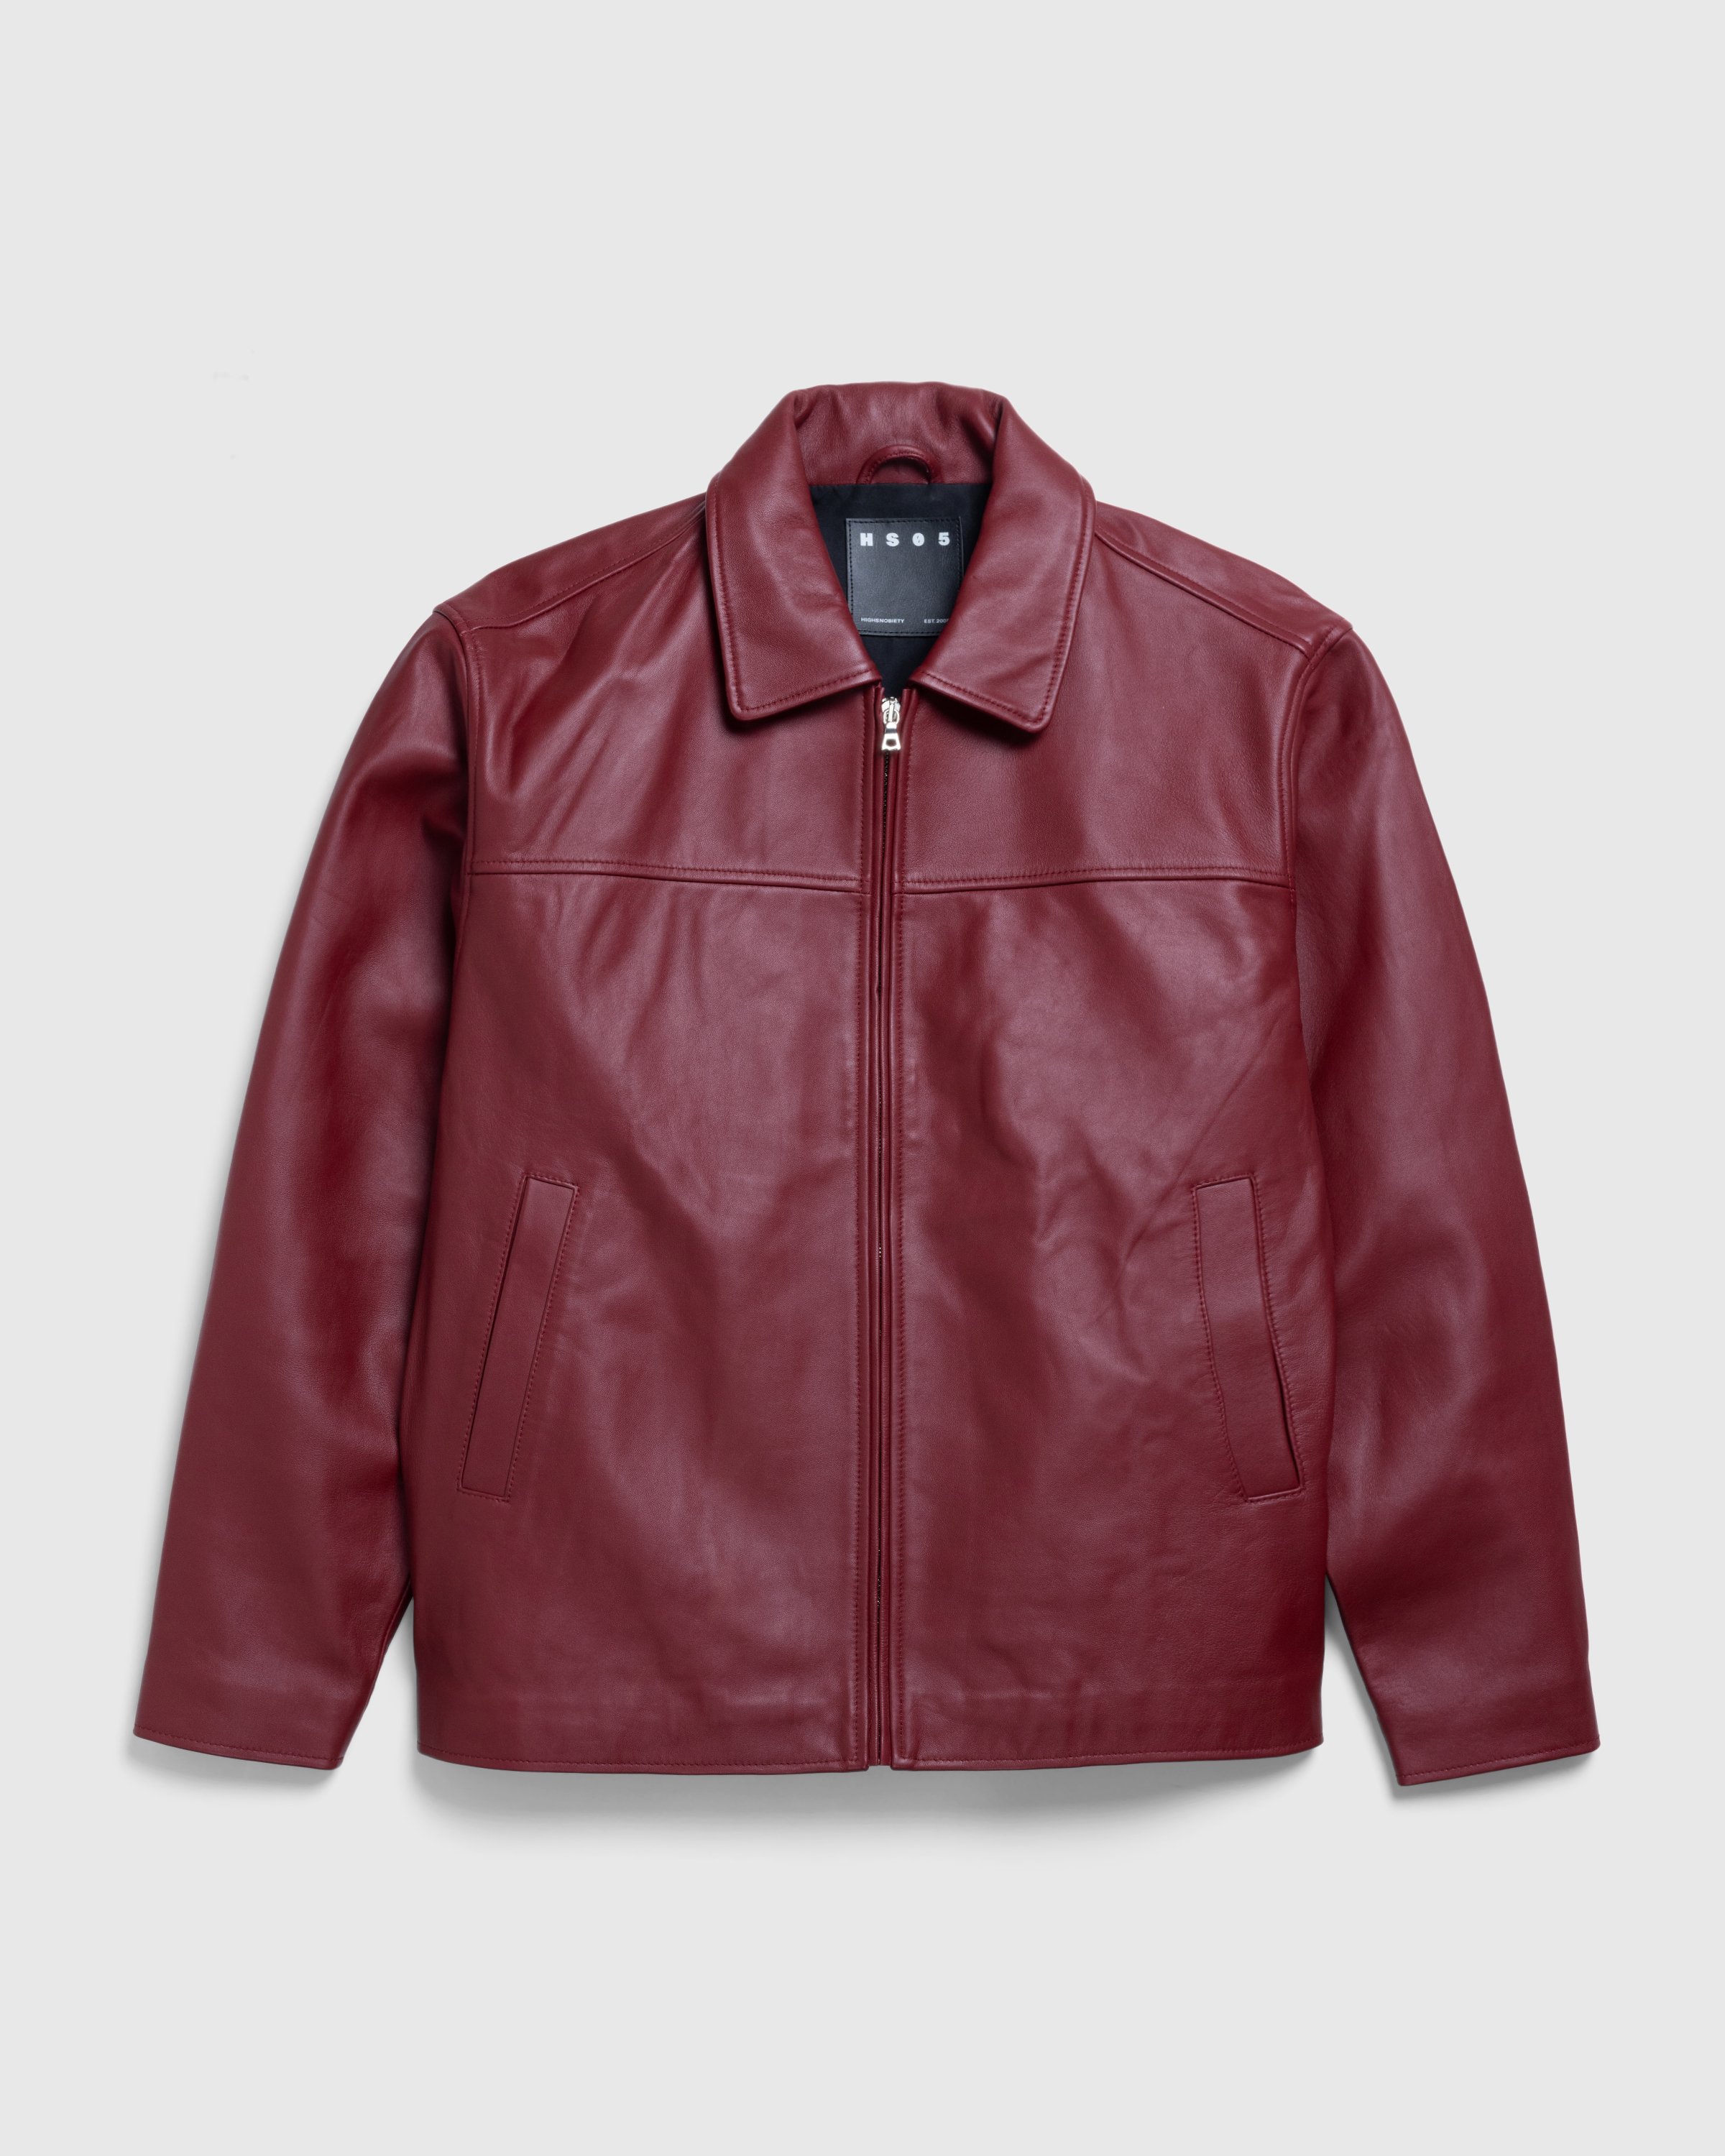 Highsnobiety HS05 - Leather Jacket Burgundy - Clothing - Burgundy - Image 1